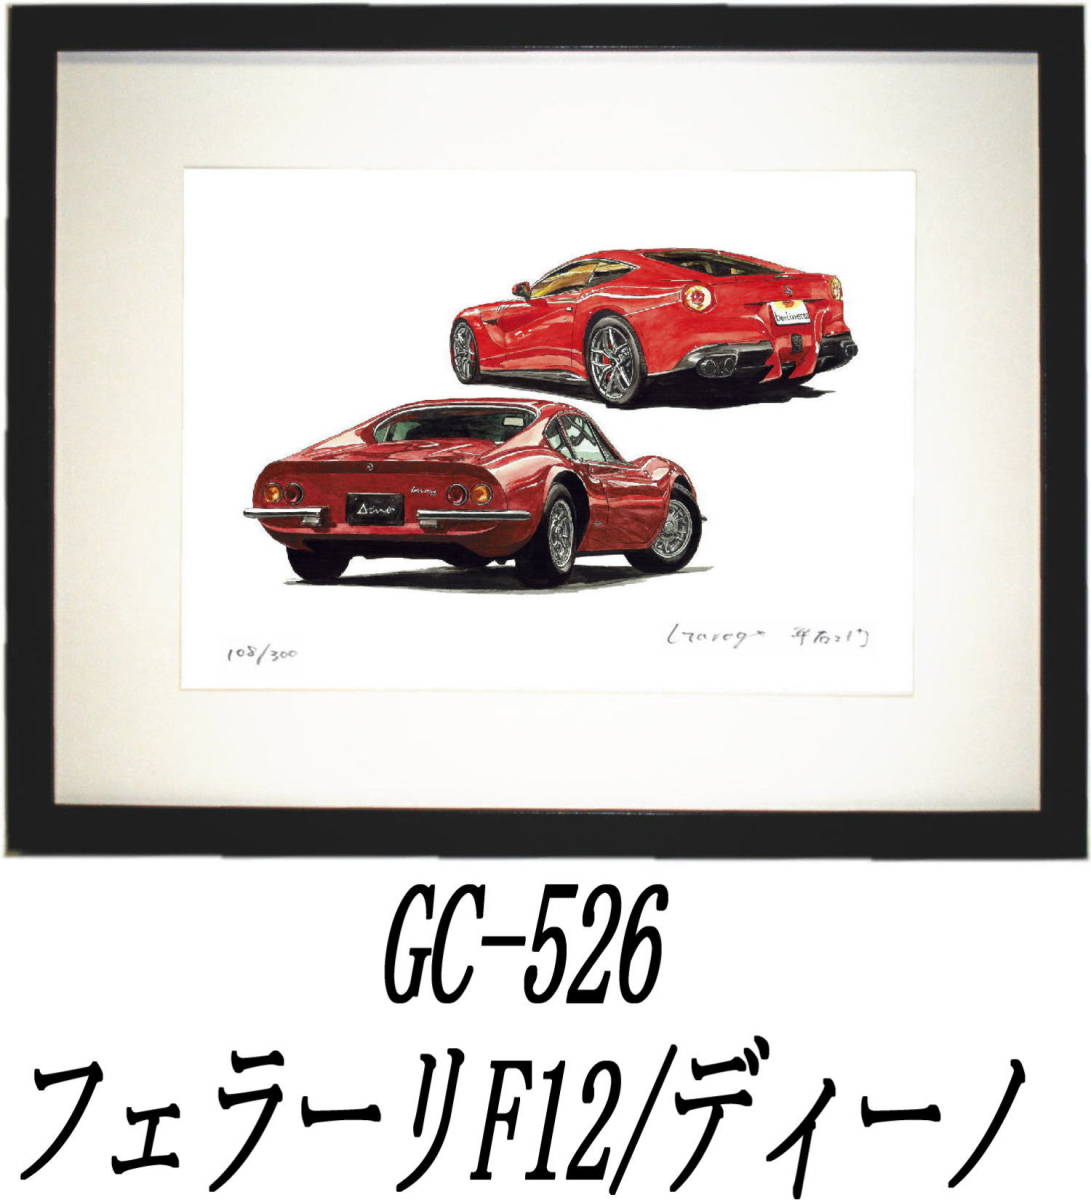 GC-526 Ferrari F12/ Dino *GC-527 F12/F-1 ограниченая версия .300 часть автограф автограф иметь рамка settled * автор flat правый .. желающий номер . выберите пожалуйста.